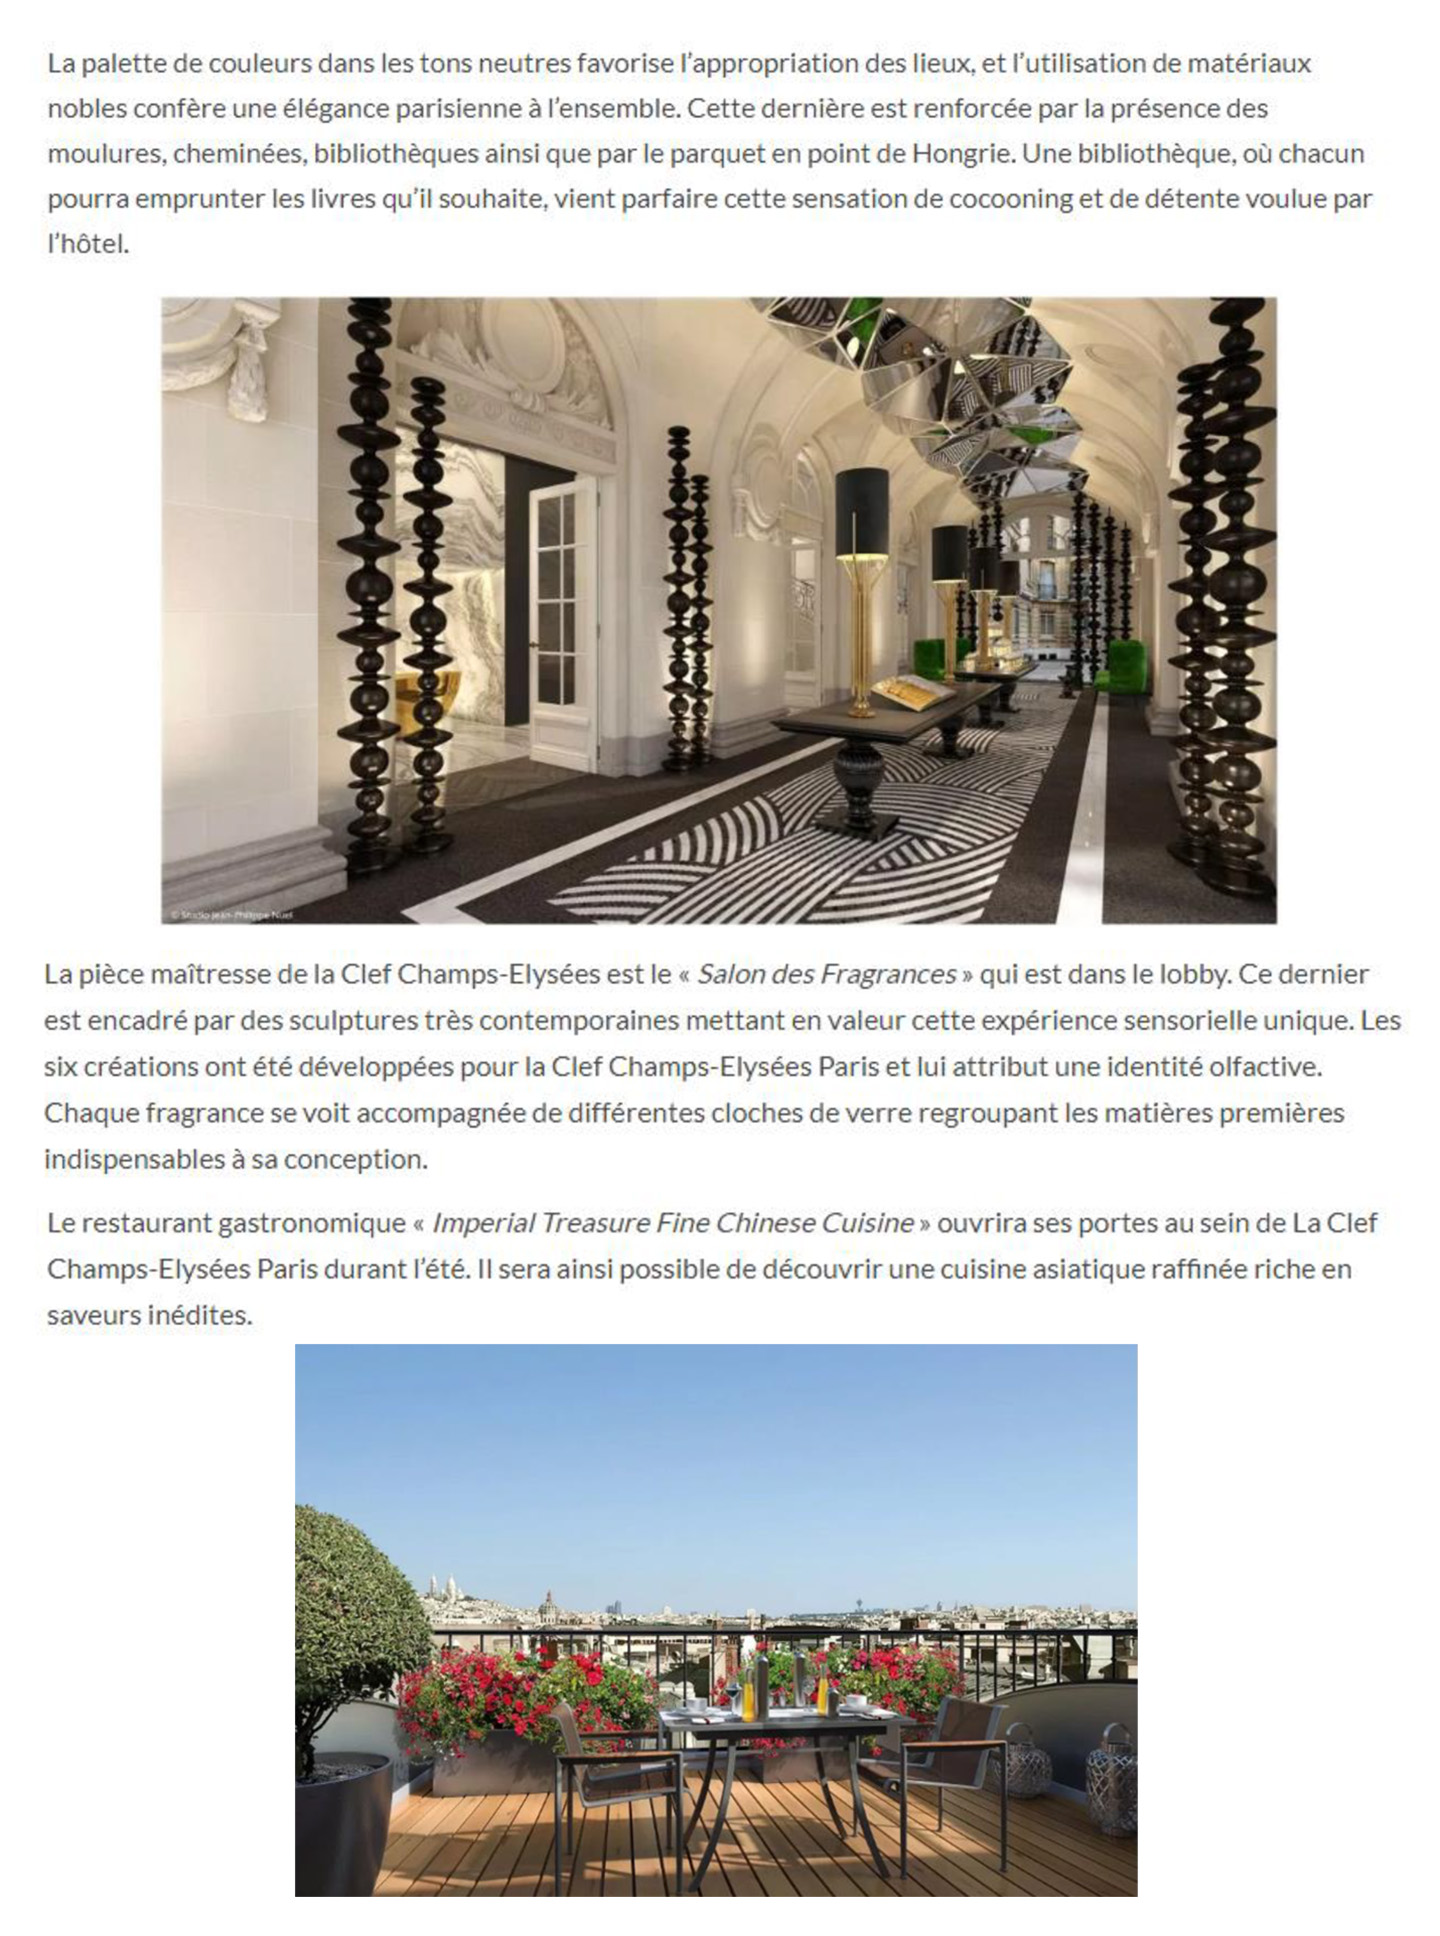 article sur l'hotel parisien 5 étoiles la clef champs elysées décoré et designé par le studio d'architecture d'intérieur jean-philippe nuel